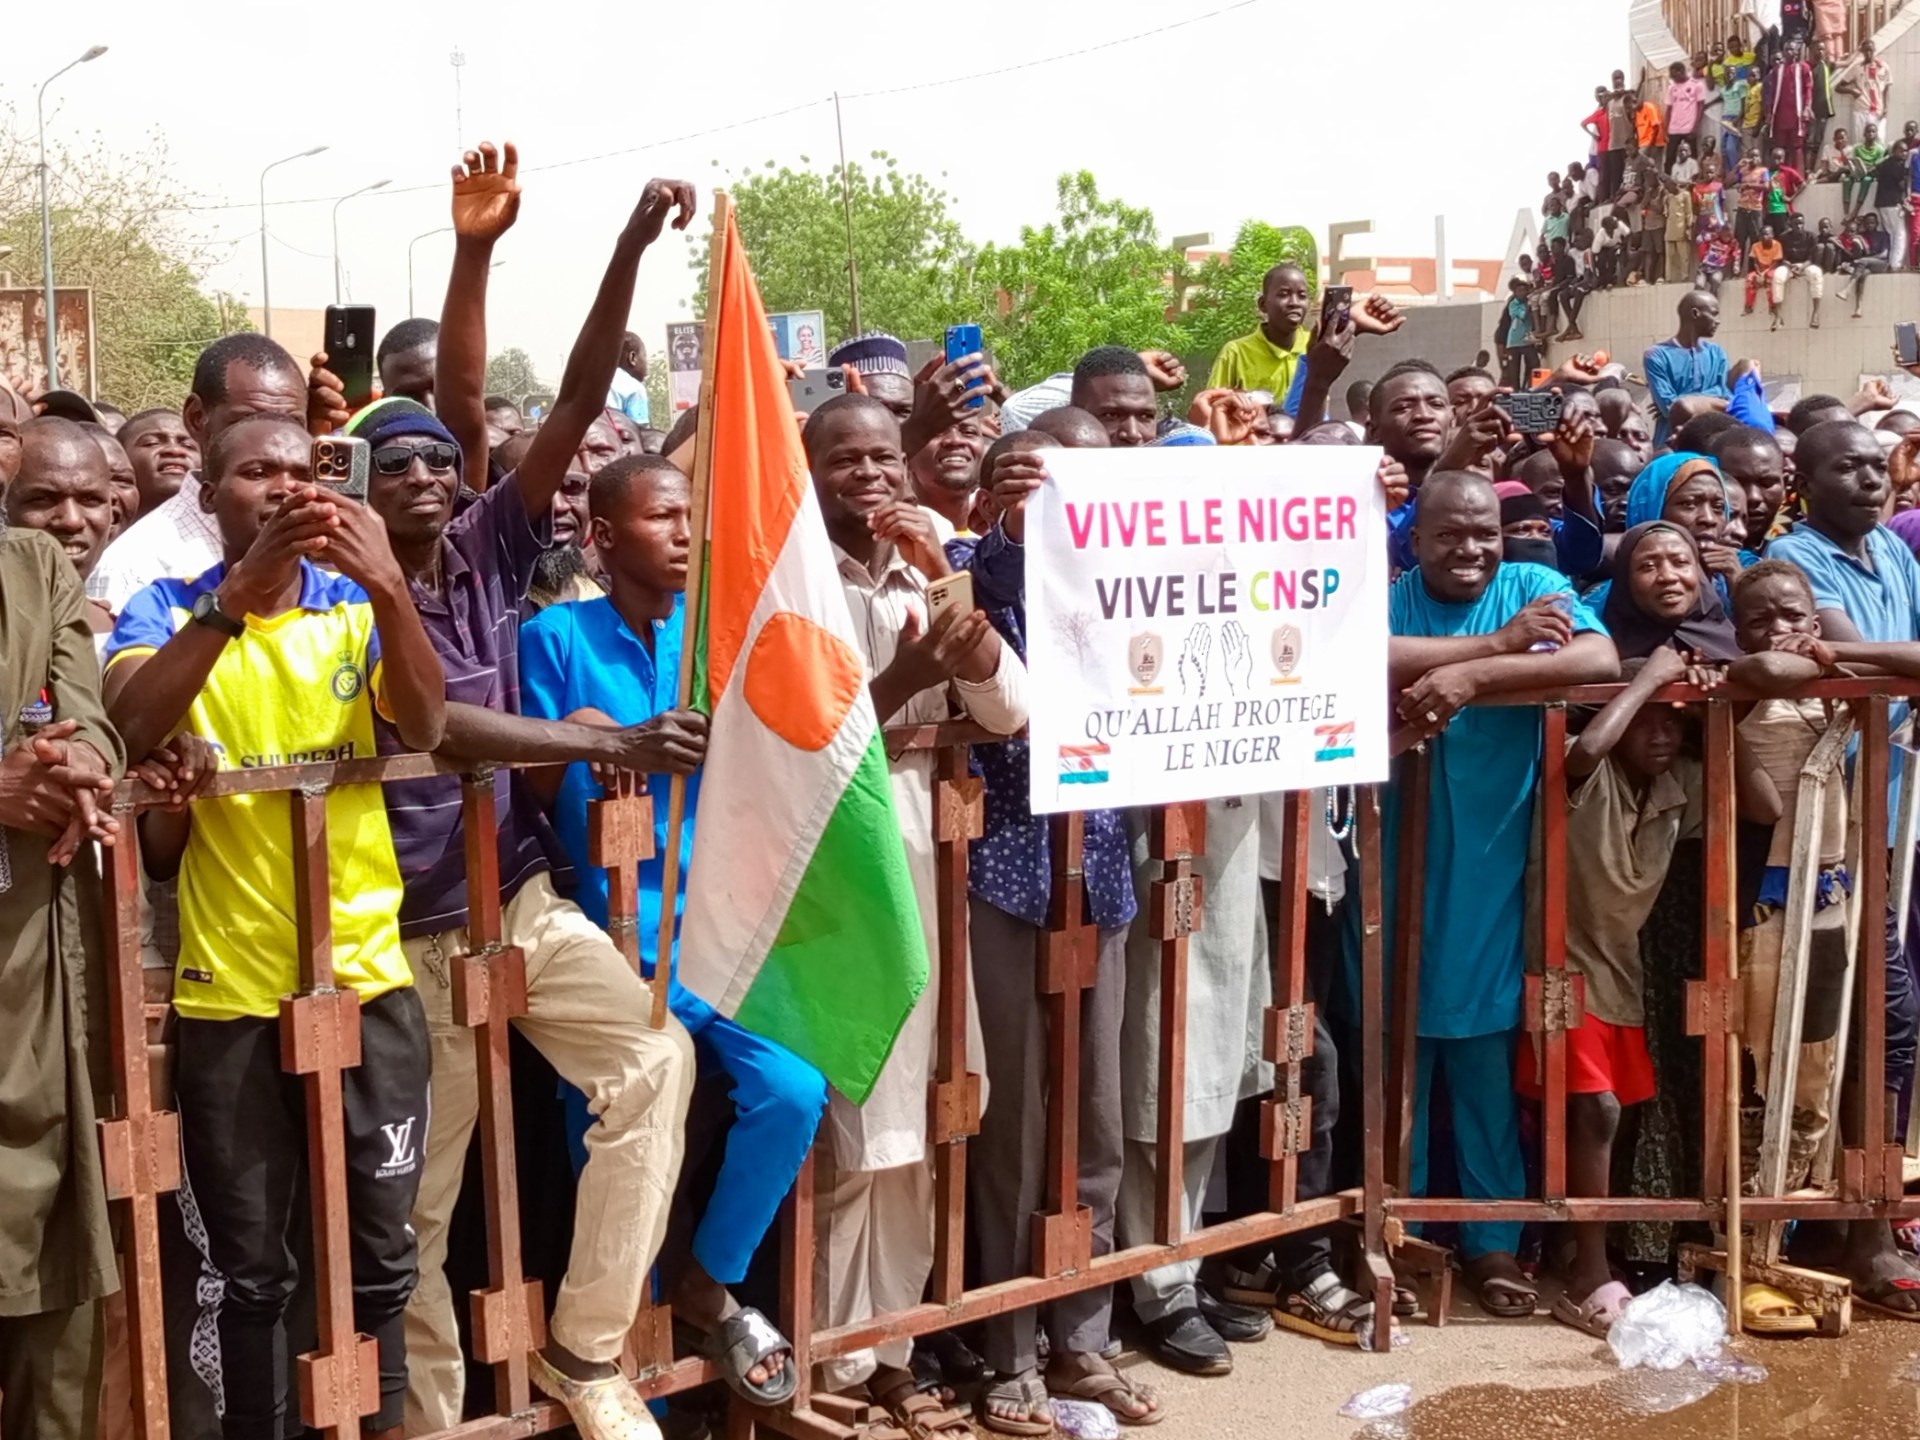 الآلاف يتظاهرون في النيجر للمطالبة برحيل القوات الأميركية | أخبار – البوكس نيوز